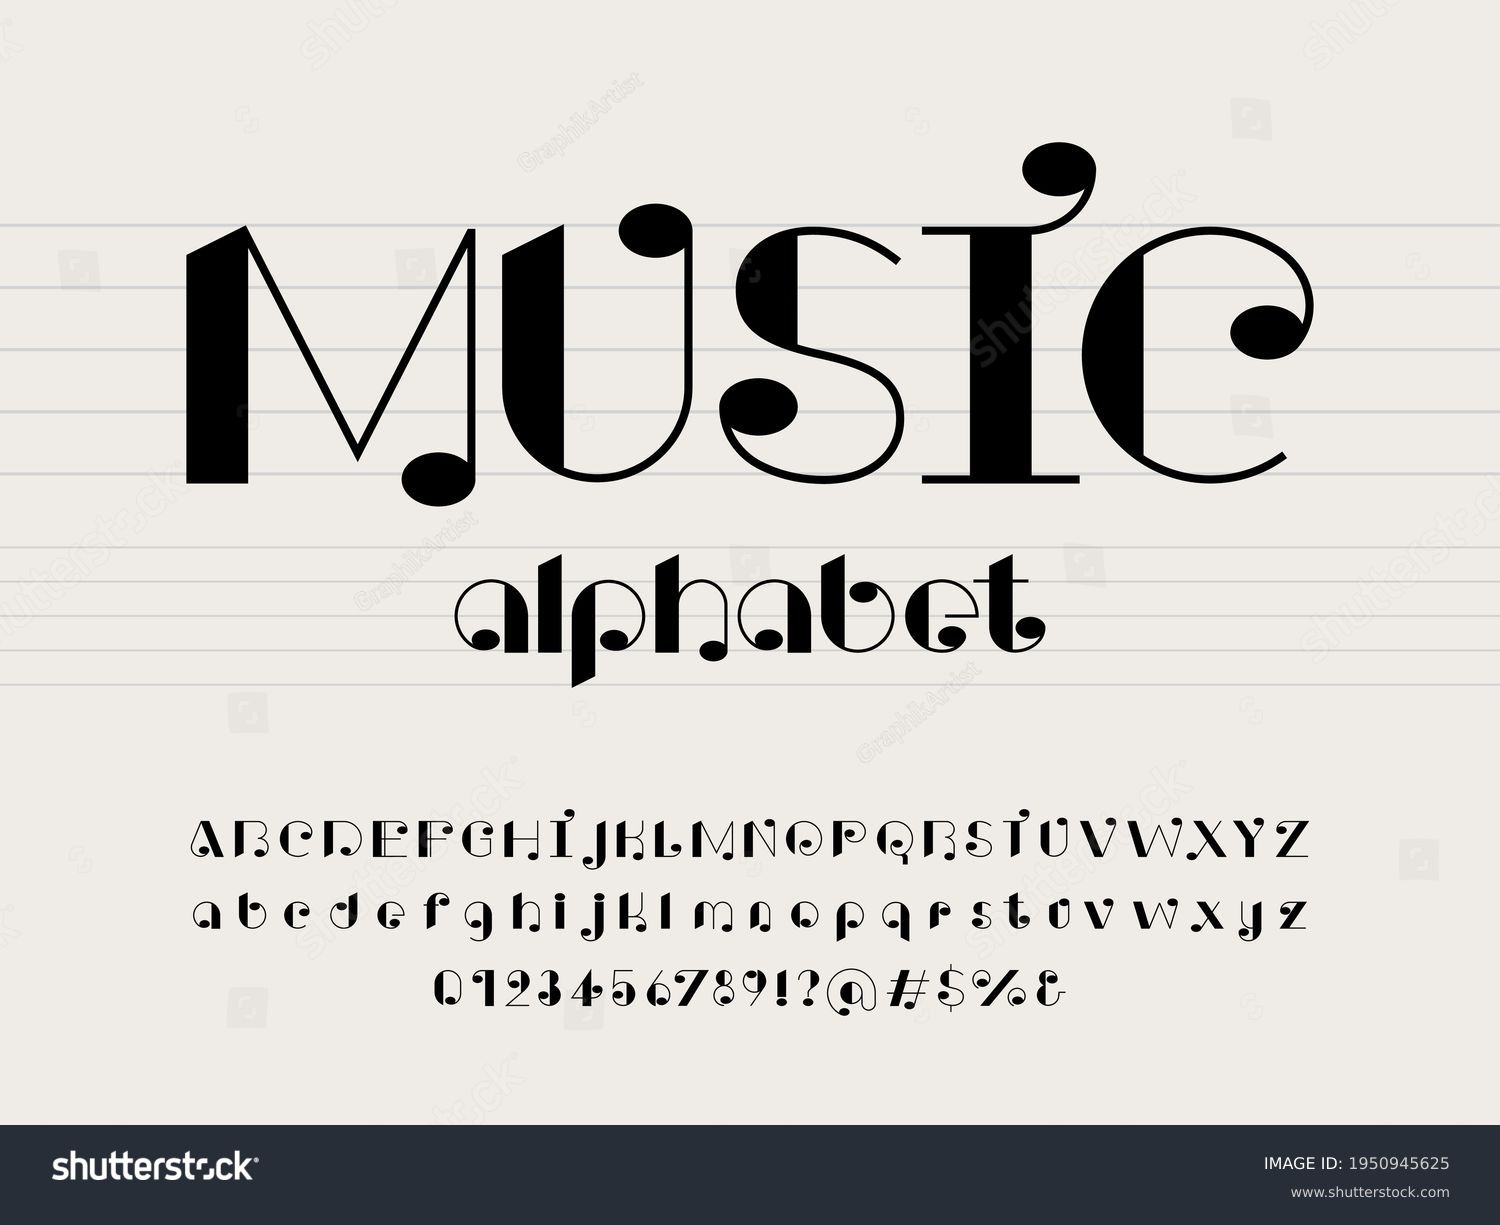 83504 Imagens De Music Alphabet Imagens Fotos Stock E Vetores Shutterstock